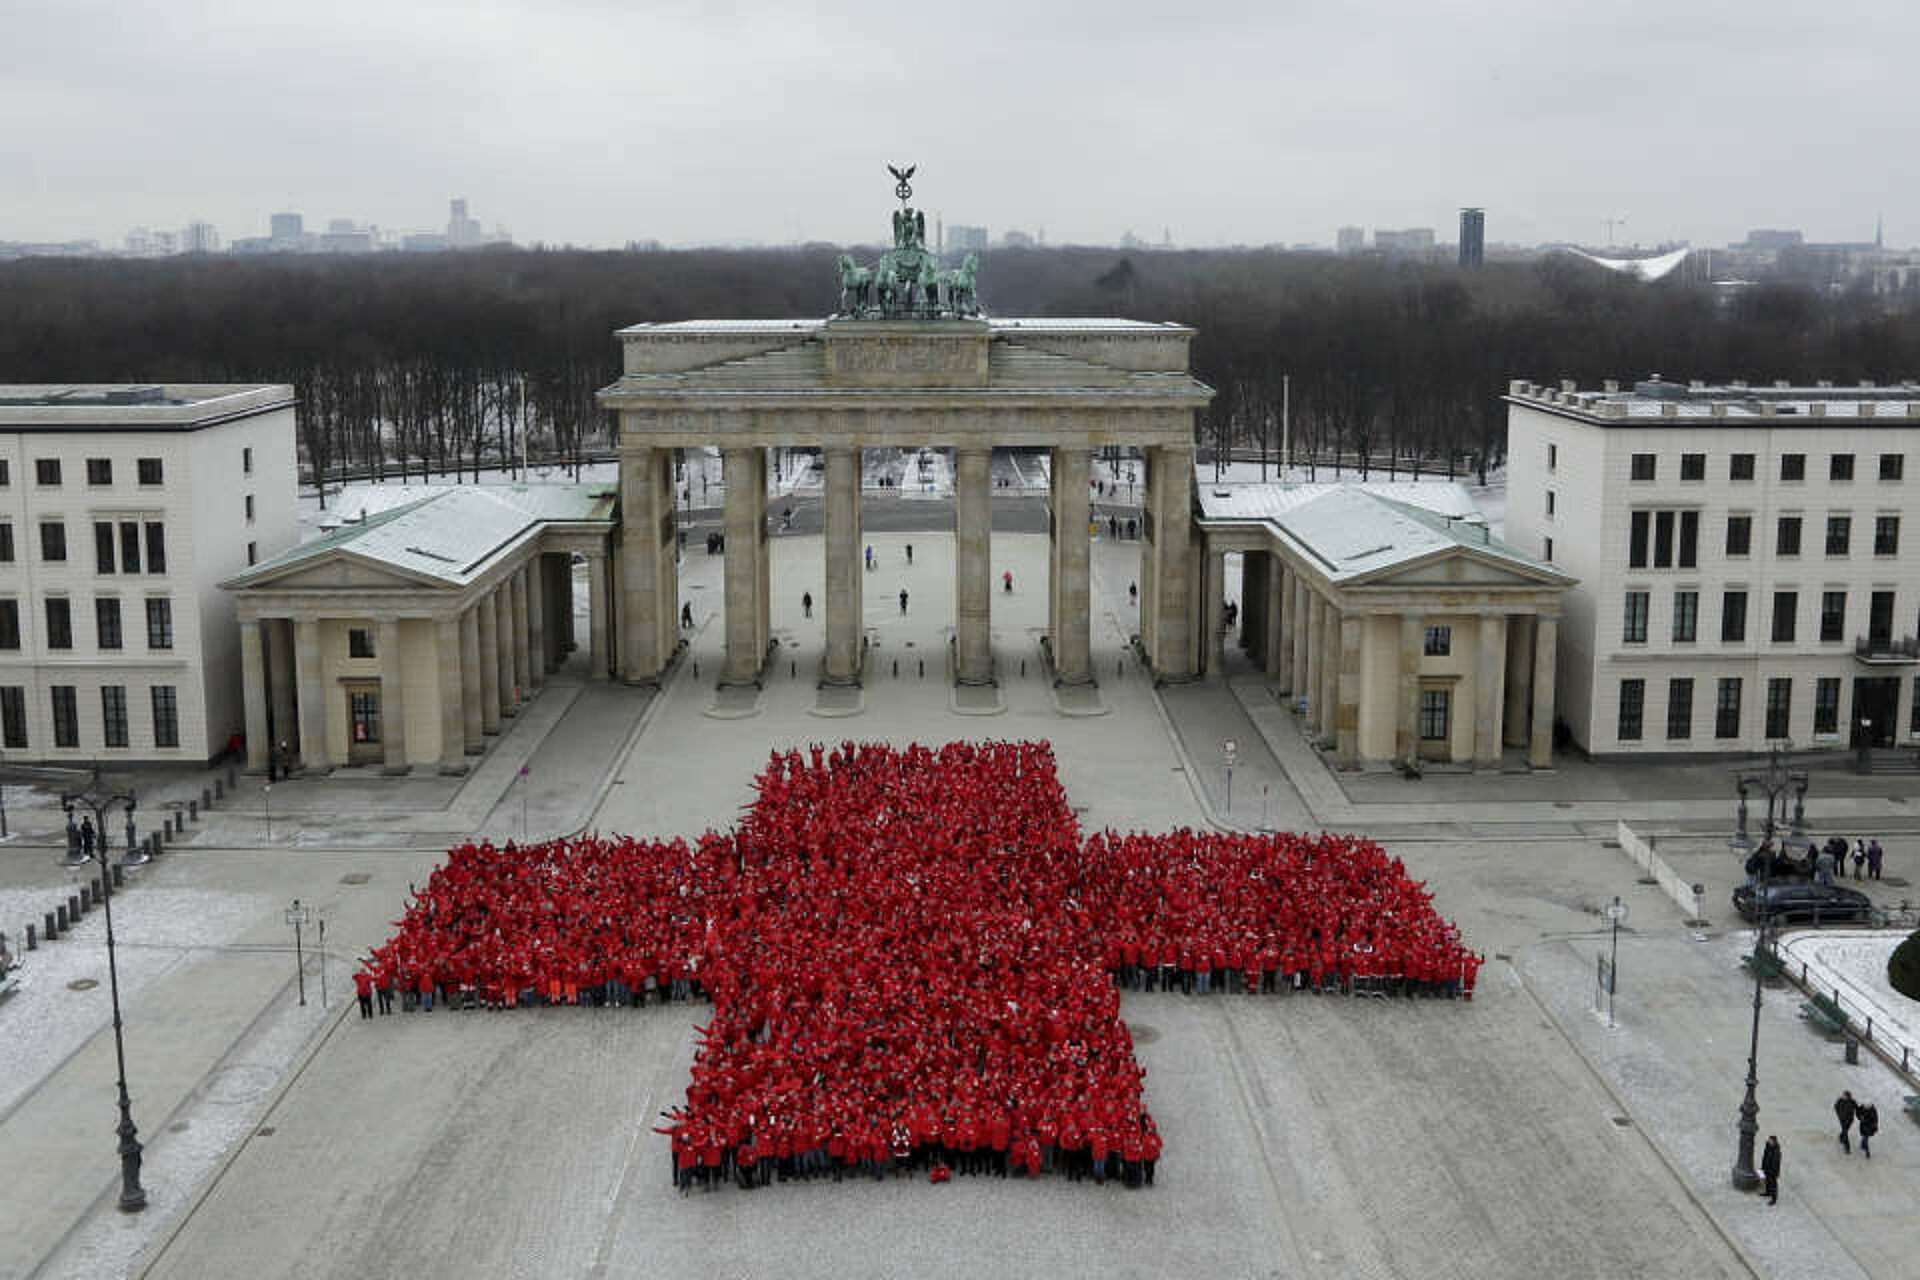 Jubiläum 150 Jahre DRK: Rotes Kreuz vor dem Brandenburger Tor in Berlin